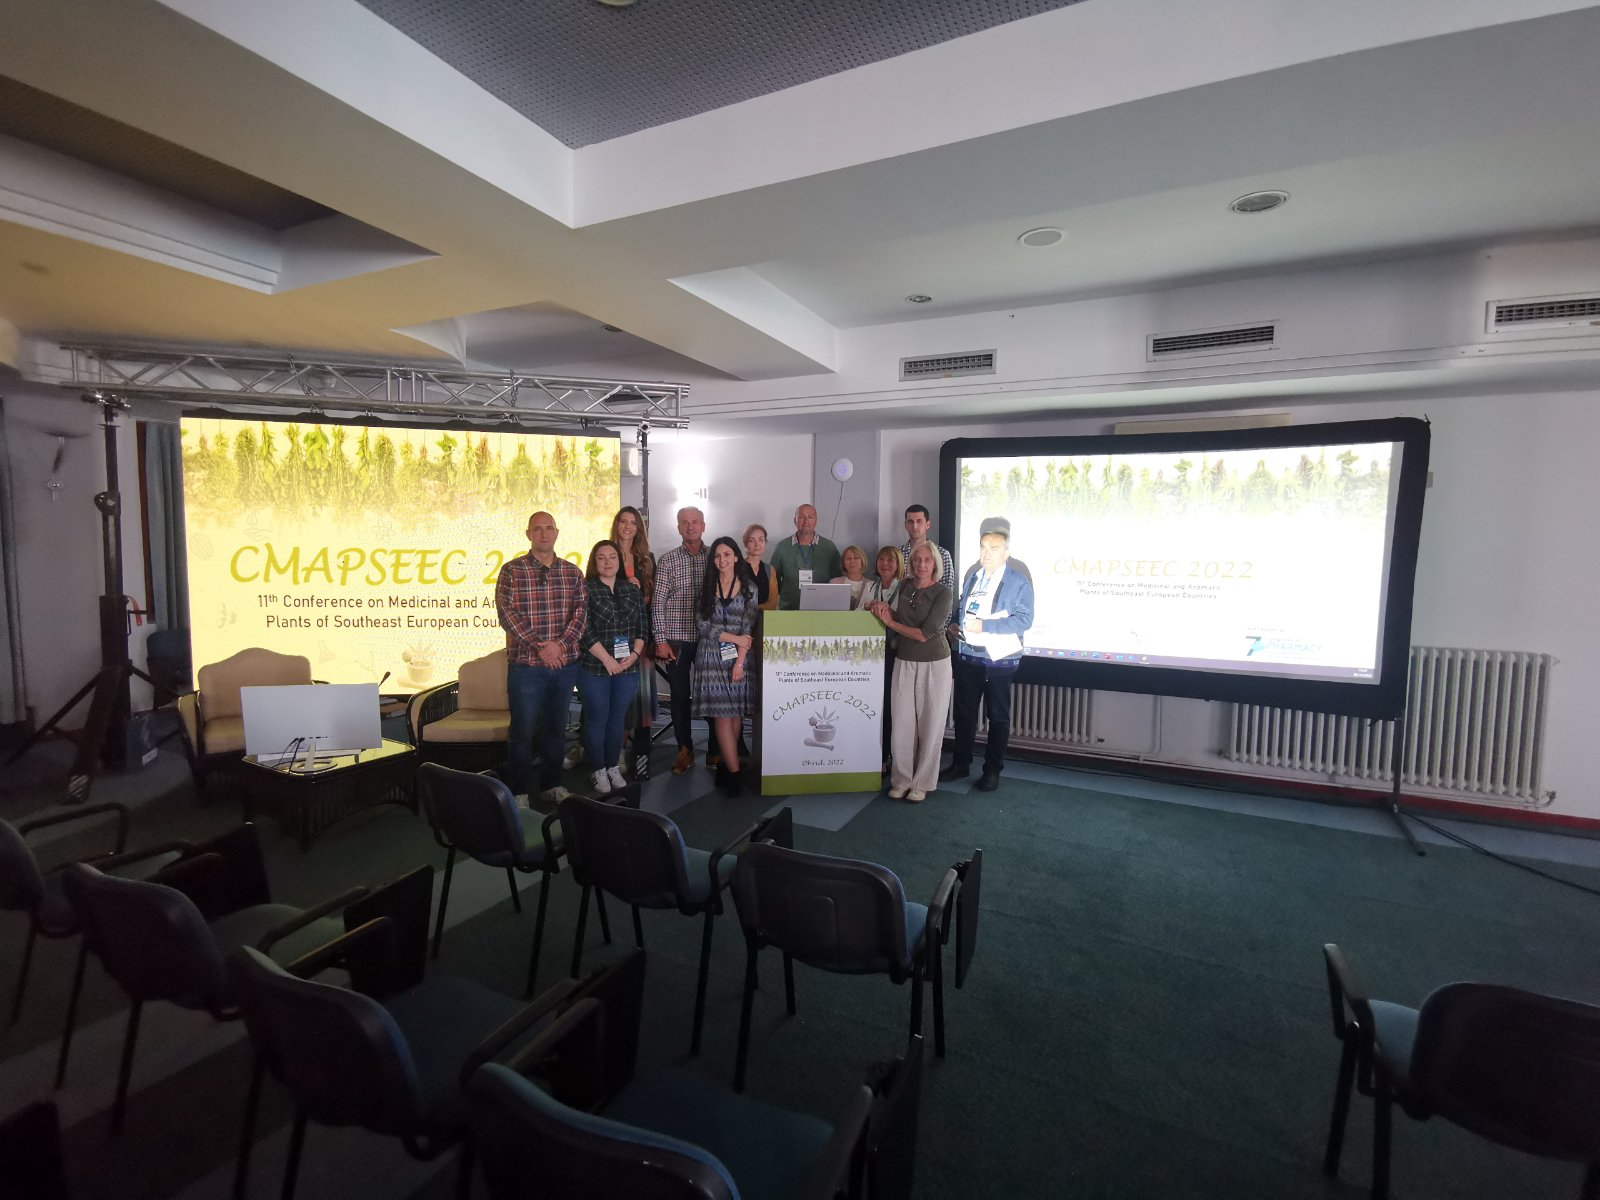 Konferencija o lekovitim i aromatičnim biljkama zemalja jugoistočne Evrope (CMAPSEEC)